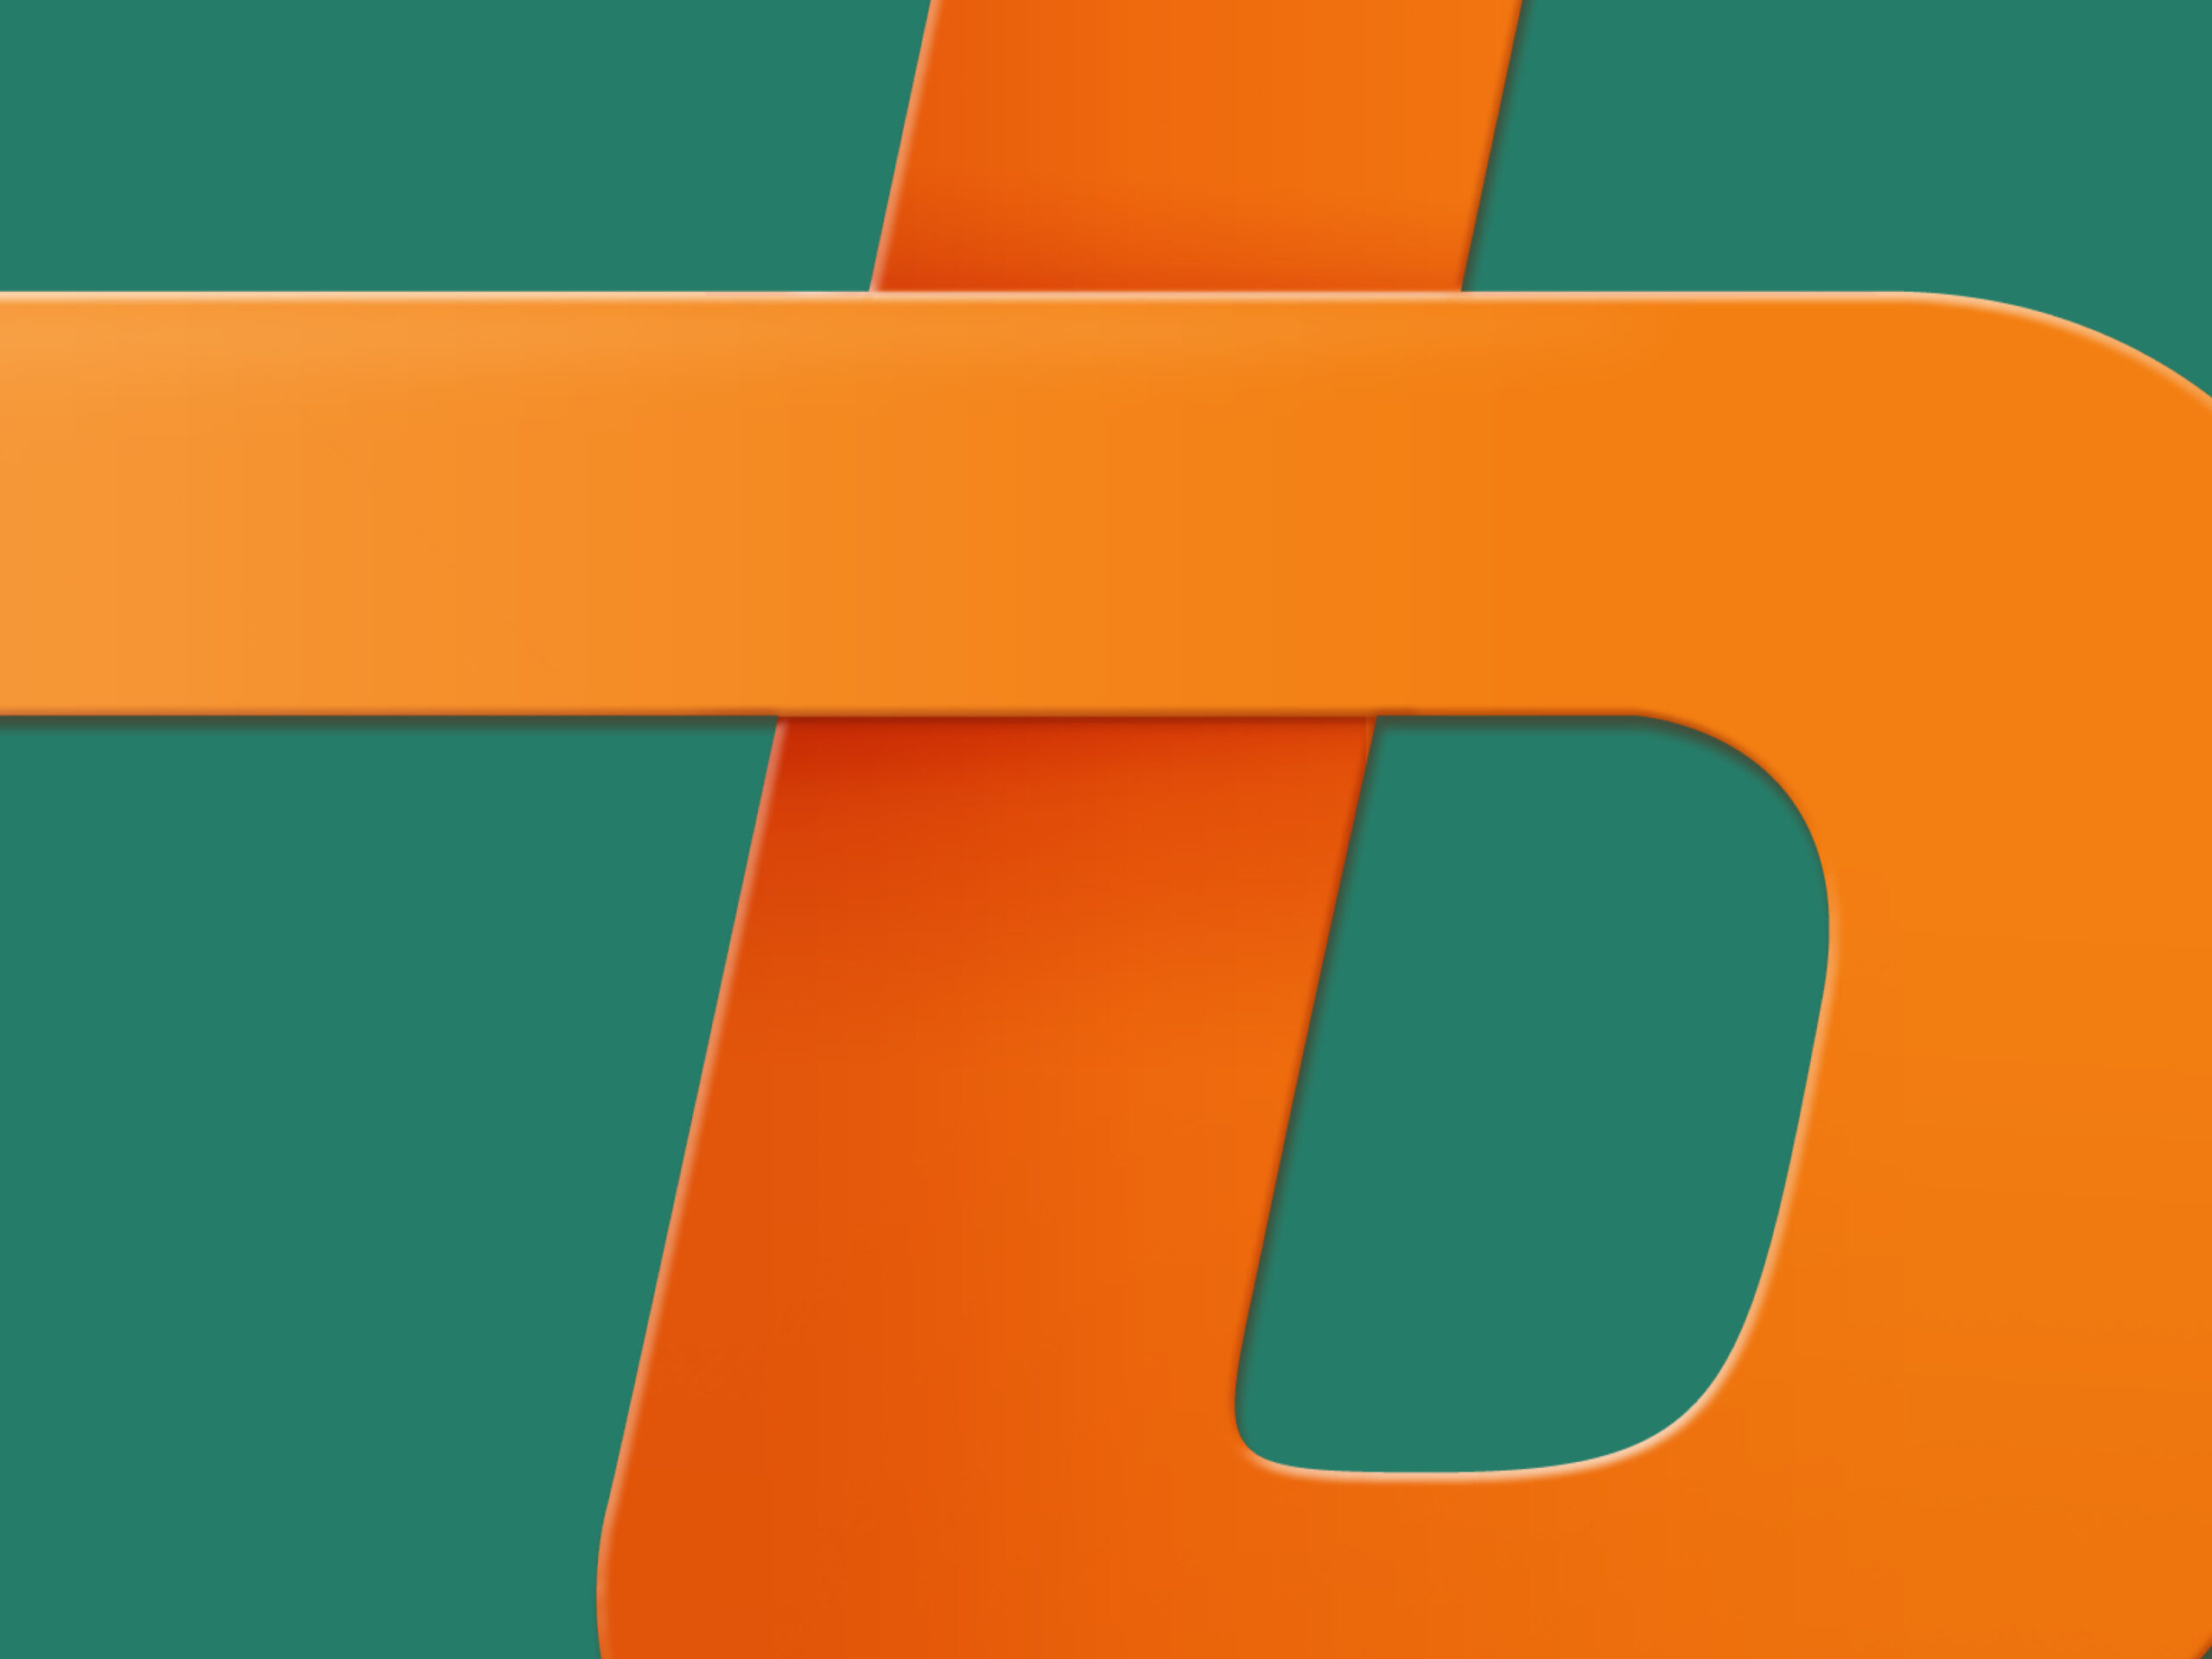 Das Kachelbild zeigt die Initiale b des Logos. Sie ist angeschnitten im Vordergrund in orange auf grünem Hintergrund